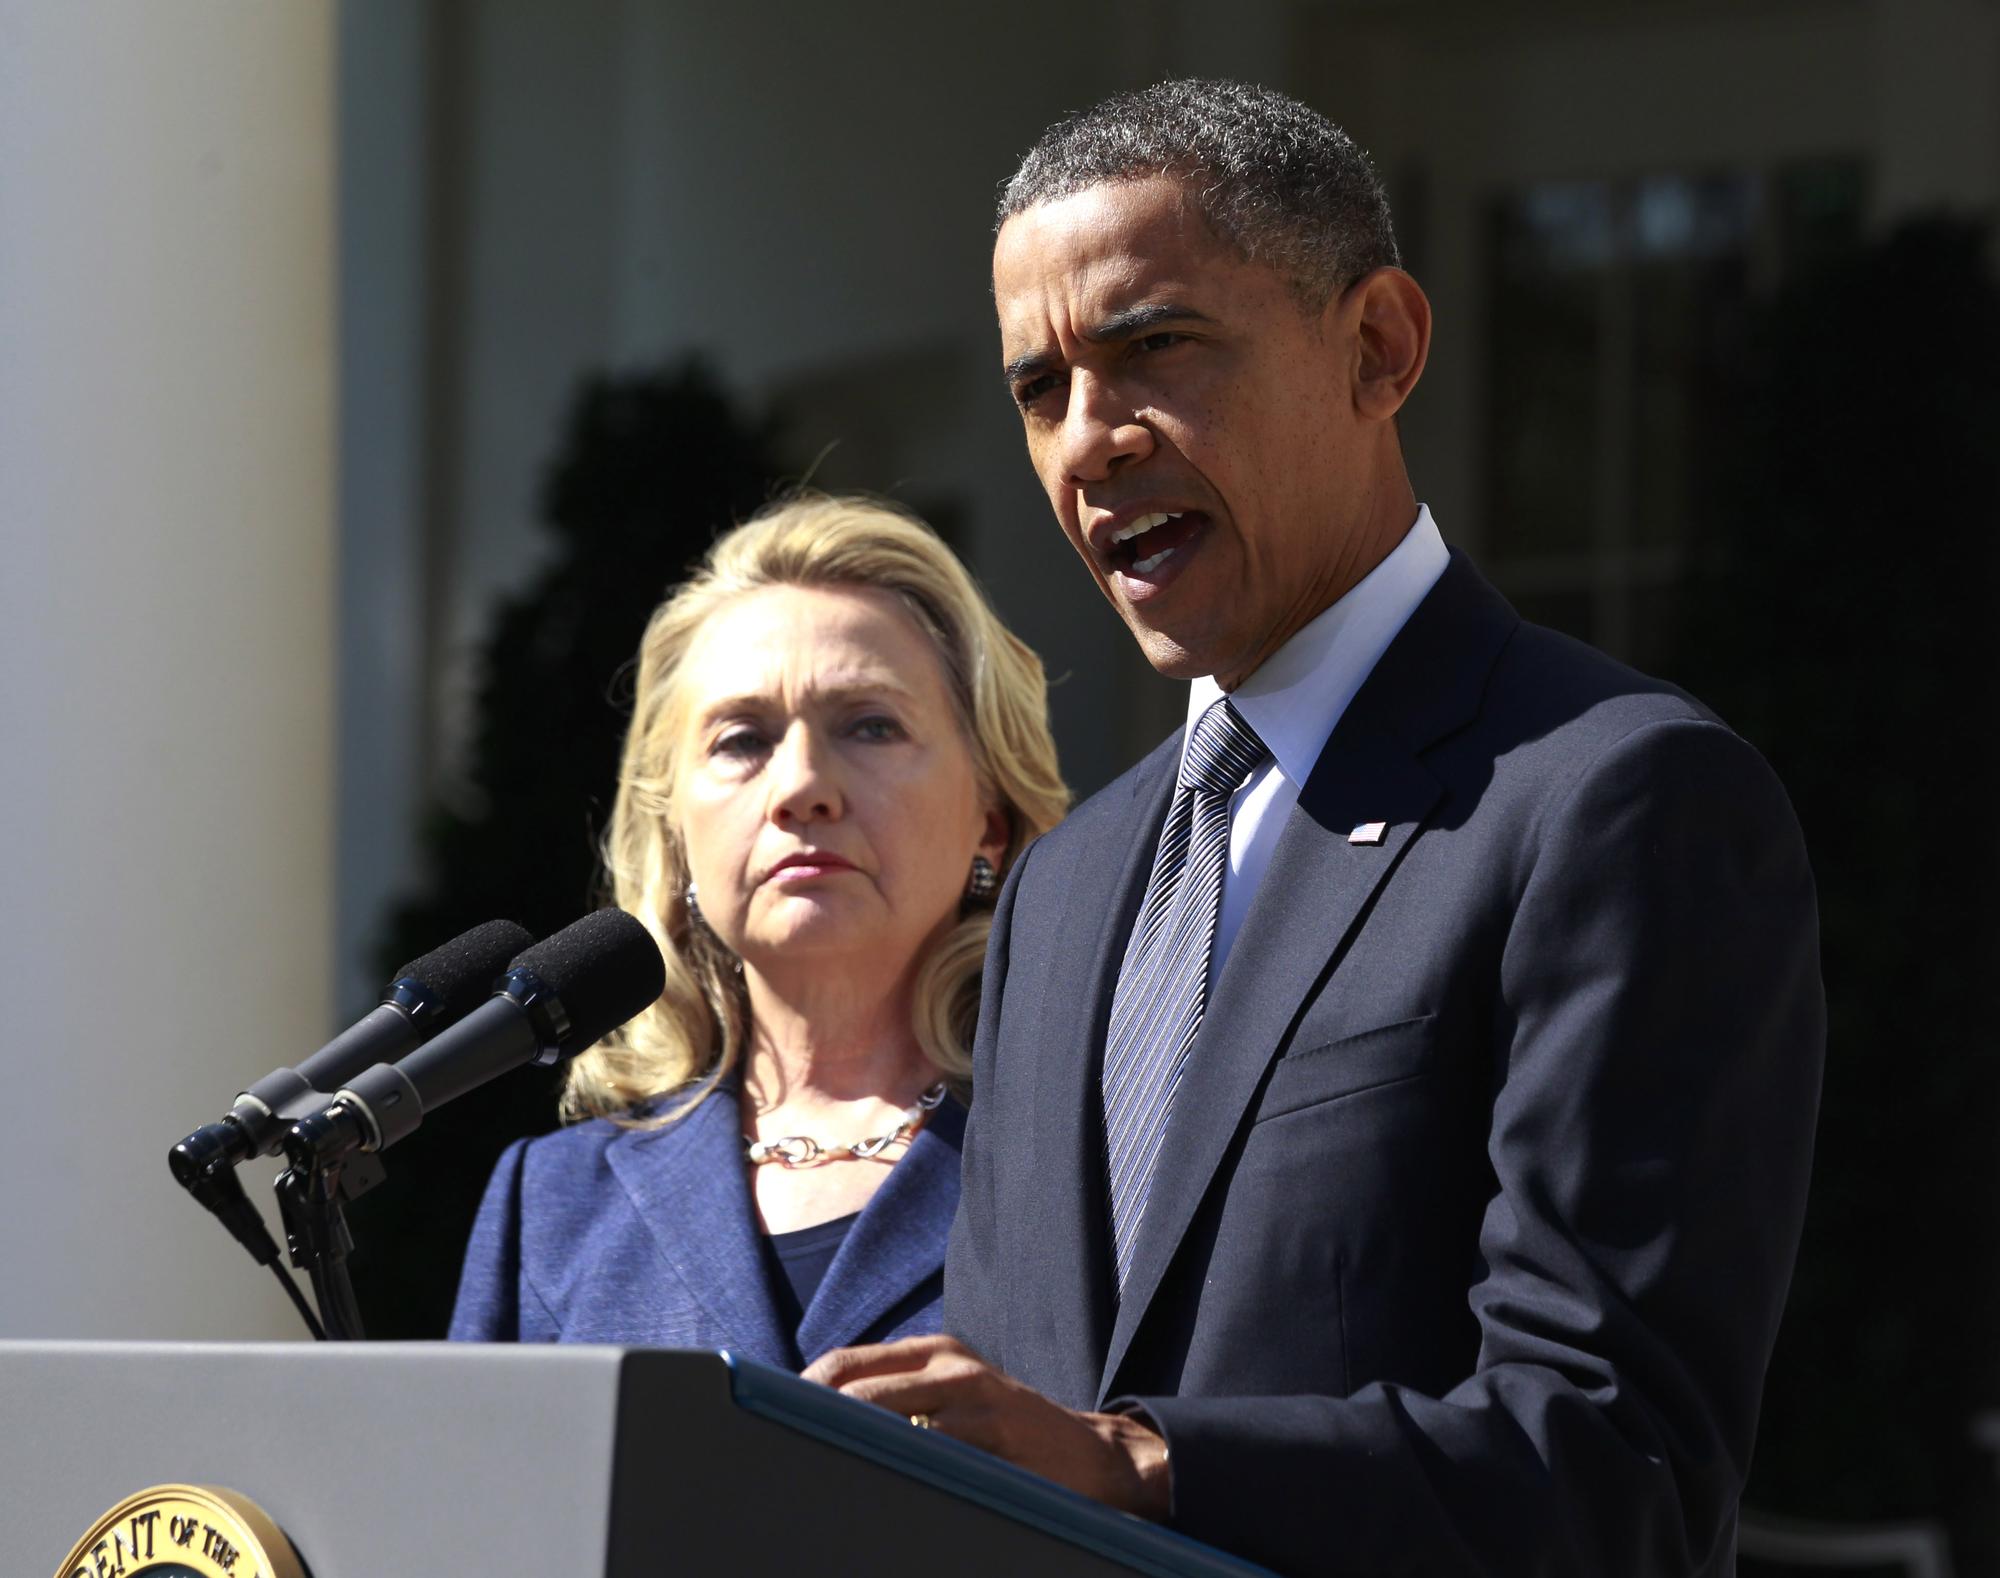 Le président Barack Obama a estimé "choquante" l'attaque en Libye. [REUTERS - Jason Reed]